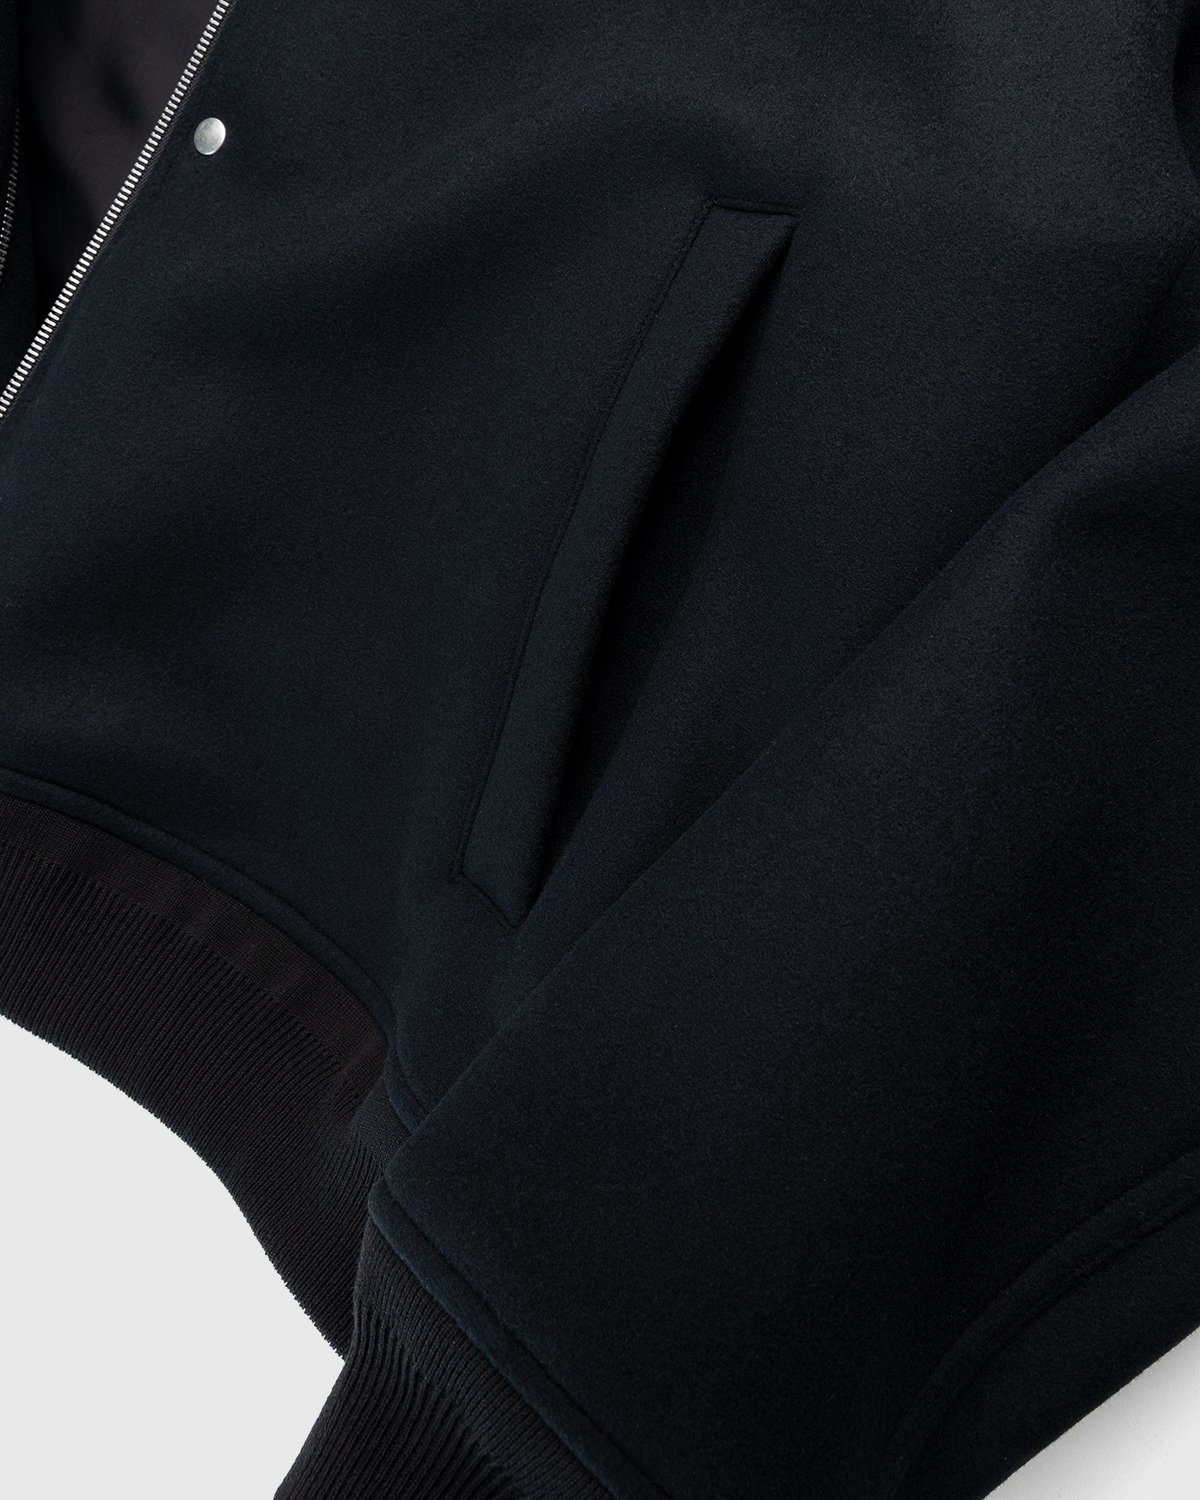 Jil Sander – Blouson Black - Outerwear - Black - Image 5